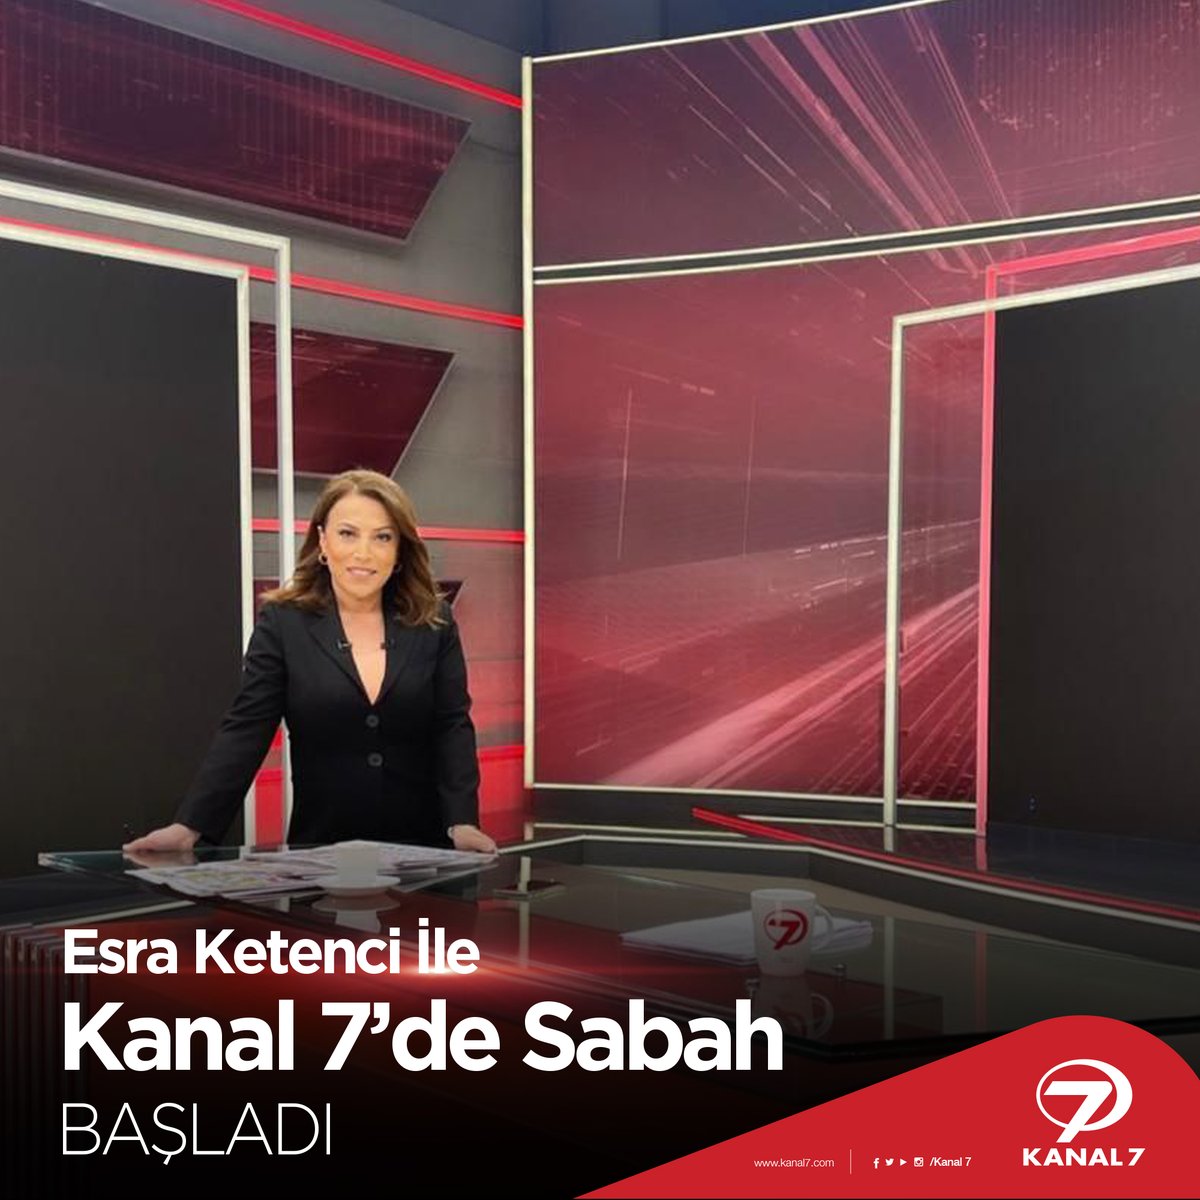 Günün ilk haberlerini Esra Ketenci ile Kanal 7'de Sabah'tan alıyoruz!🧐 Ülkede ve dünyada olup bitenleri aktaran Esra Ketenci ile Kanal 7'de Sabah başladı...😊 #haber #esraketenci #kanal7desabah #gündem #kanal7 #günaydın